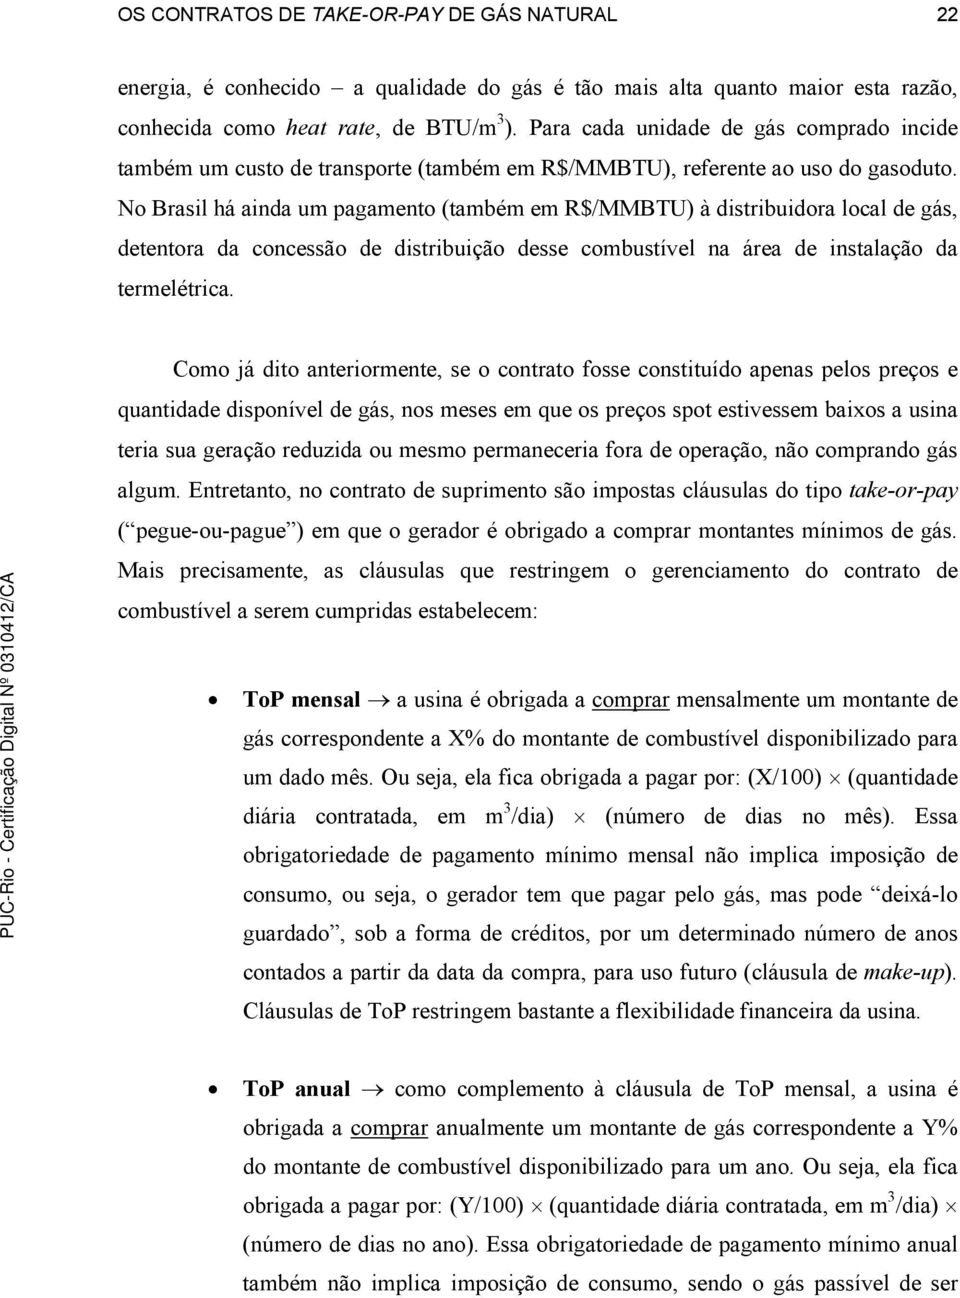 No Brasil há ainda um pagamento (também em R$/MMBTU) à distribuidora local de gás, detentora da concessão de distribuição desse combustível na área de instalação da termelétrica.